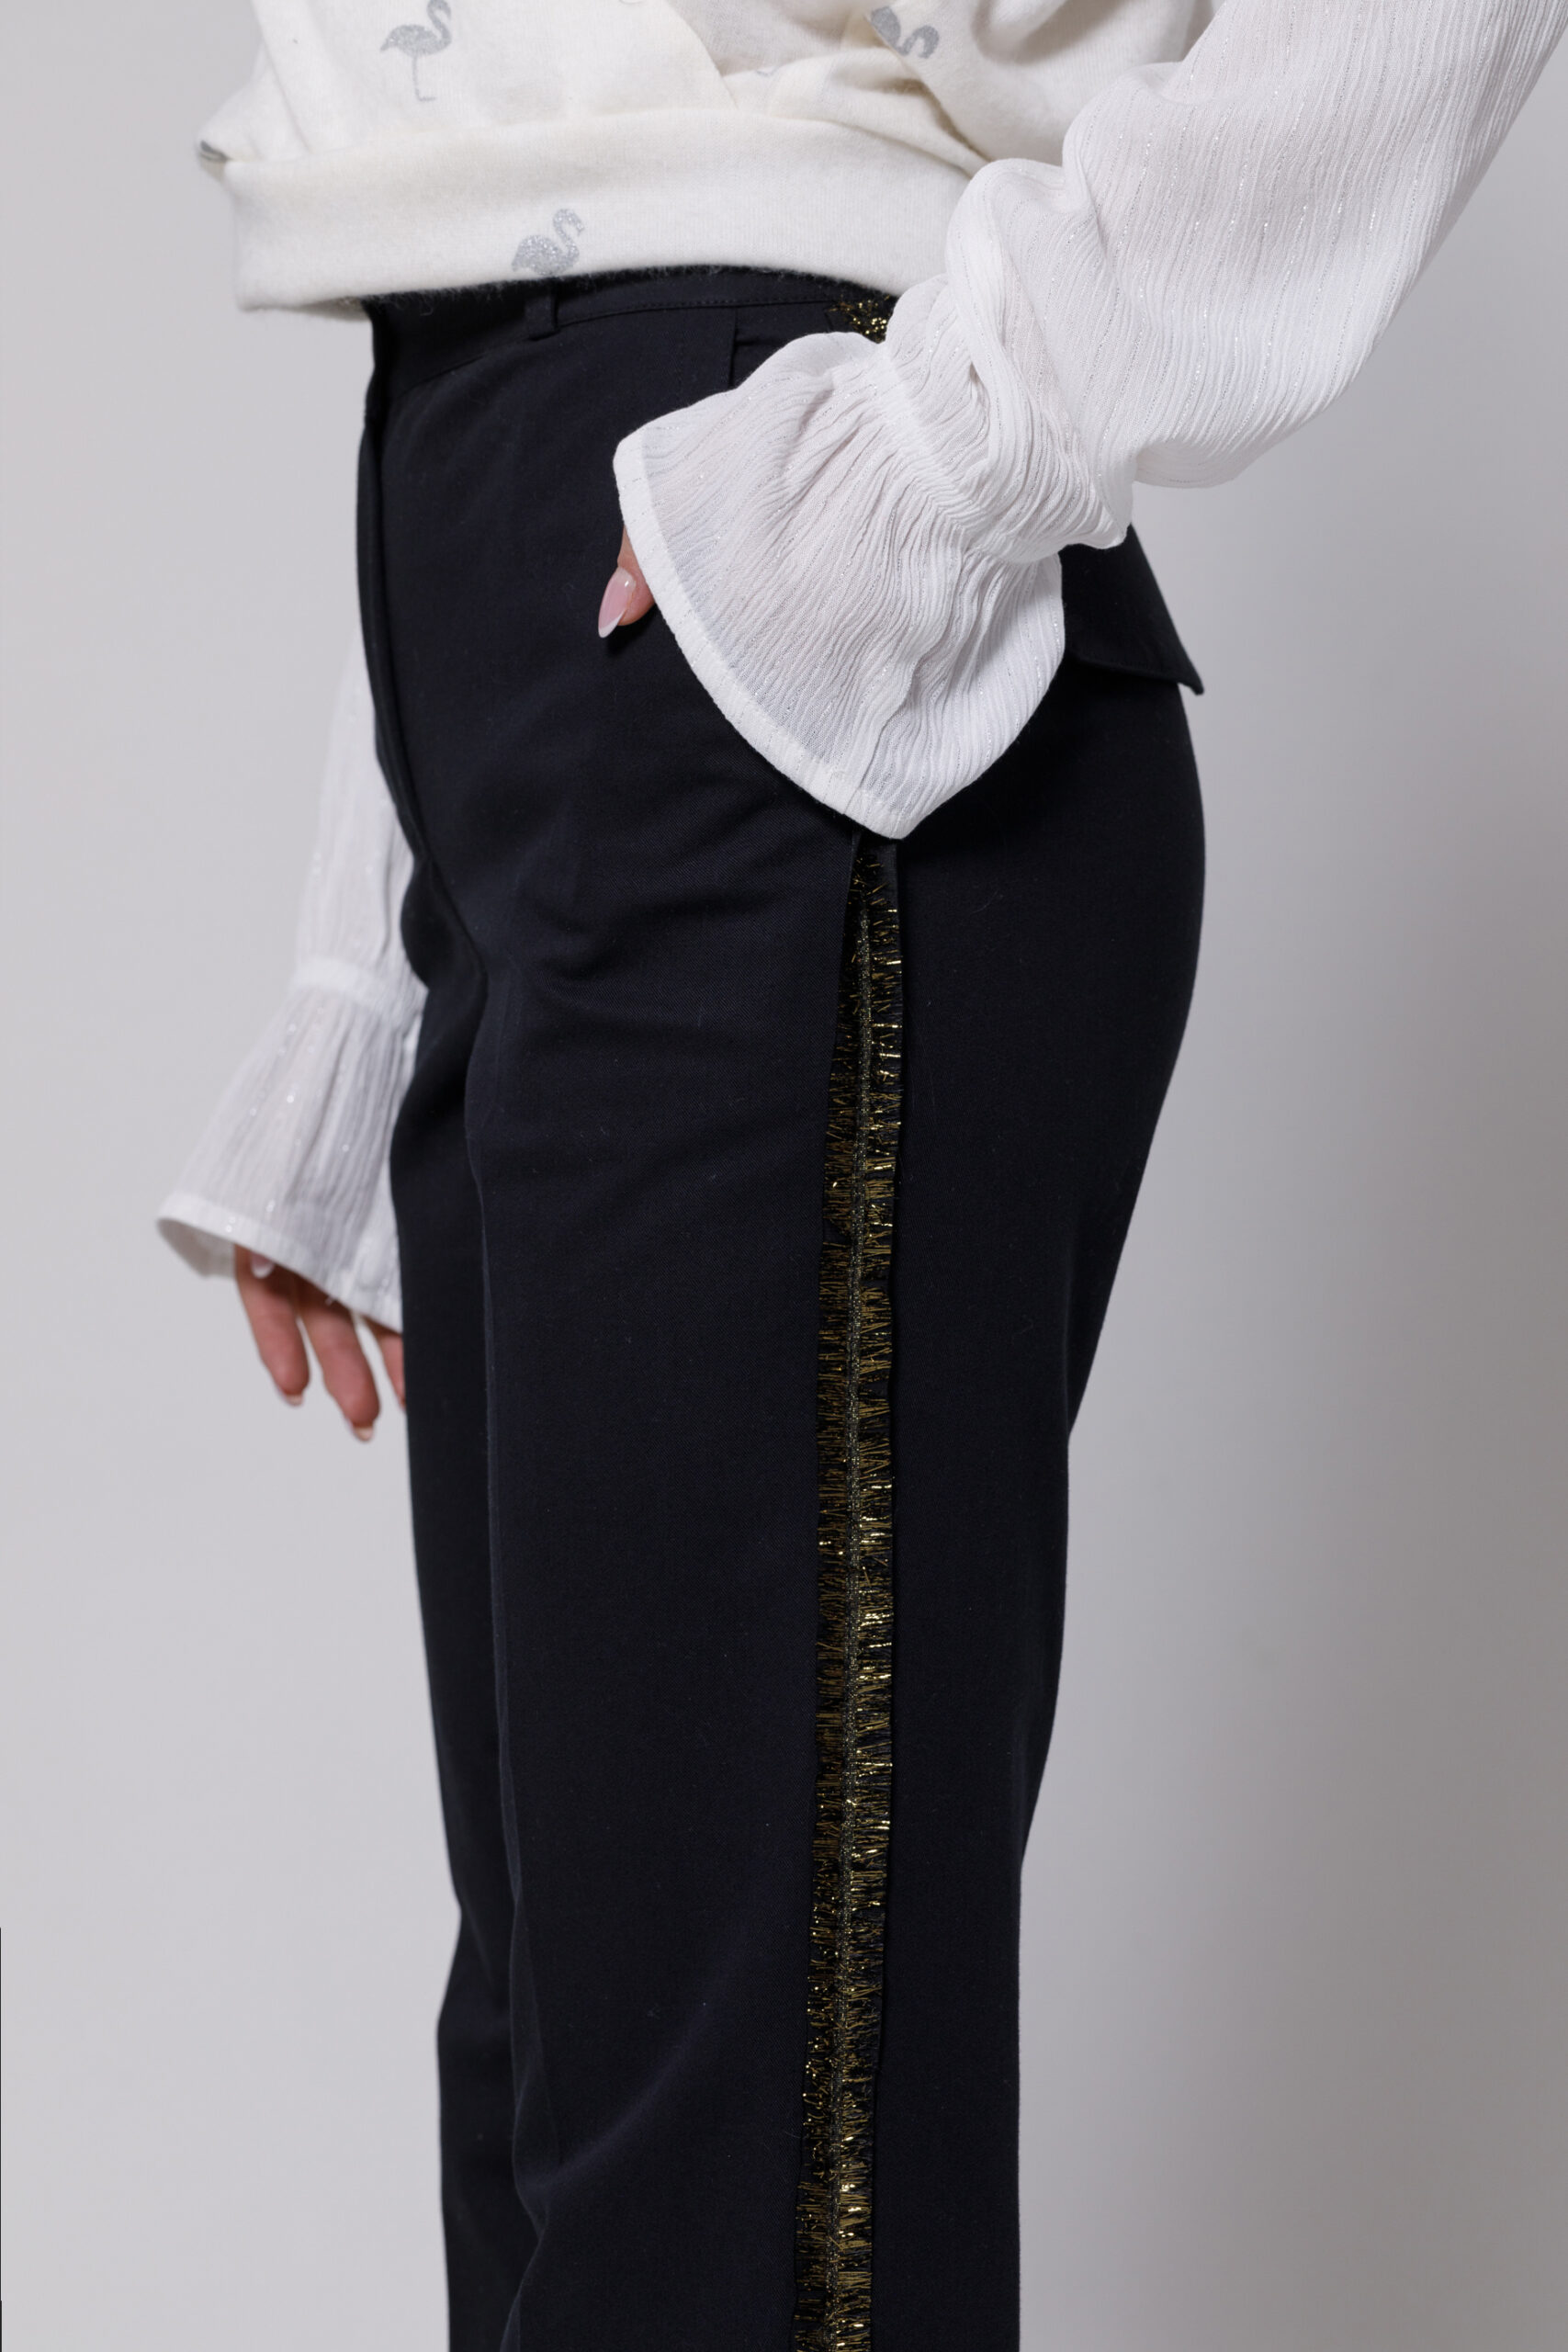 Pantalon GLADYS negru din tercot. Materiale naturale, design unicat, cu broderie si aplicatii handmade